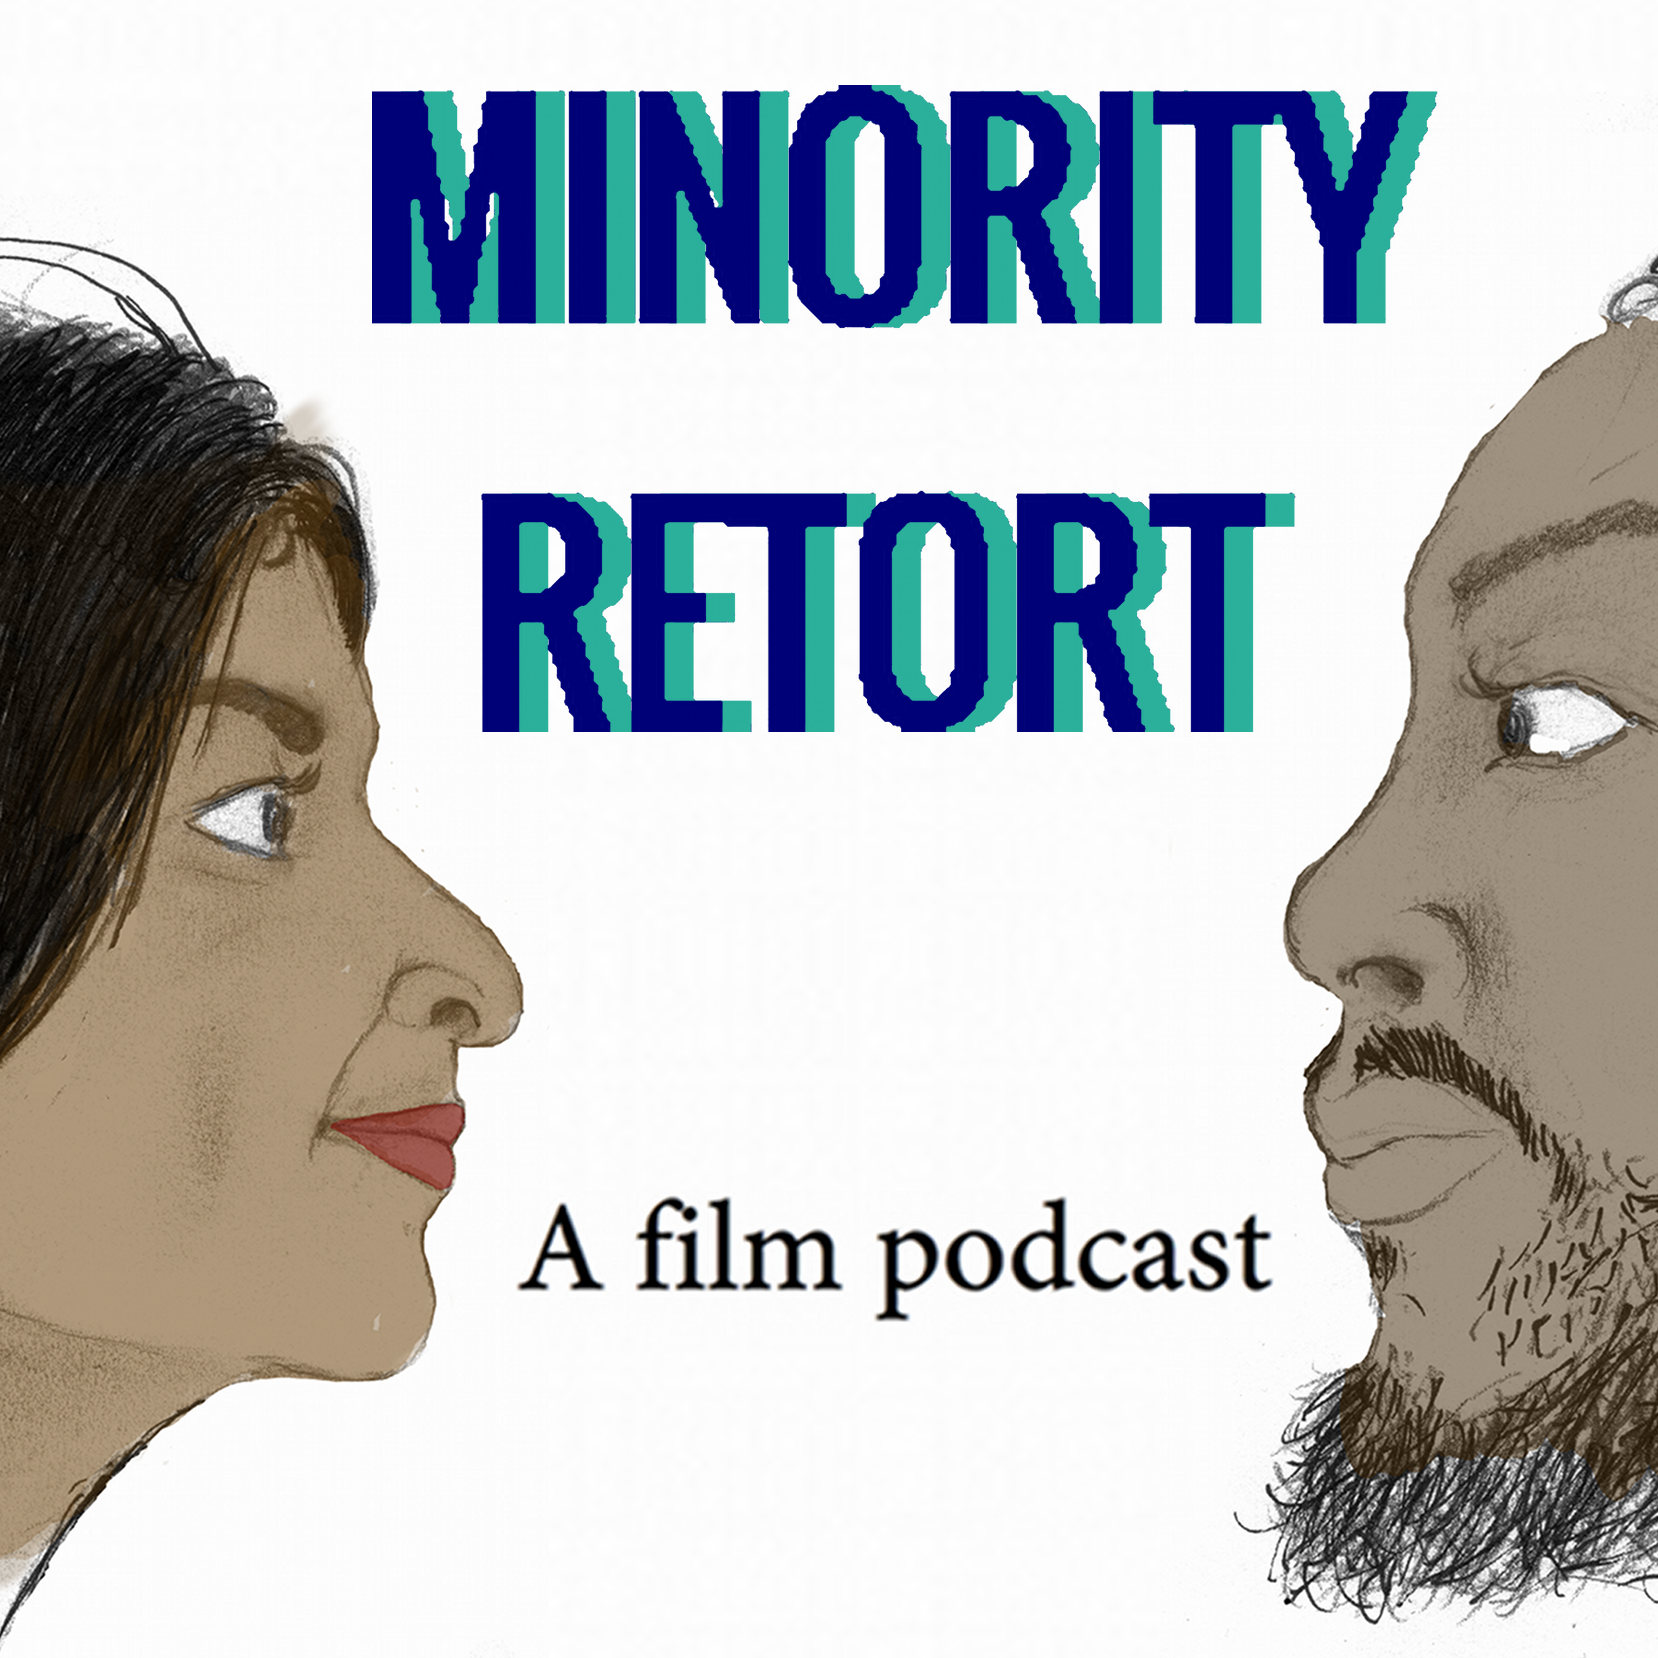 Minority Retort Podcast